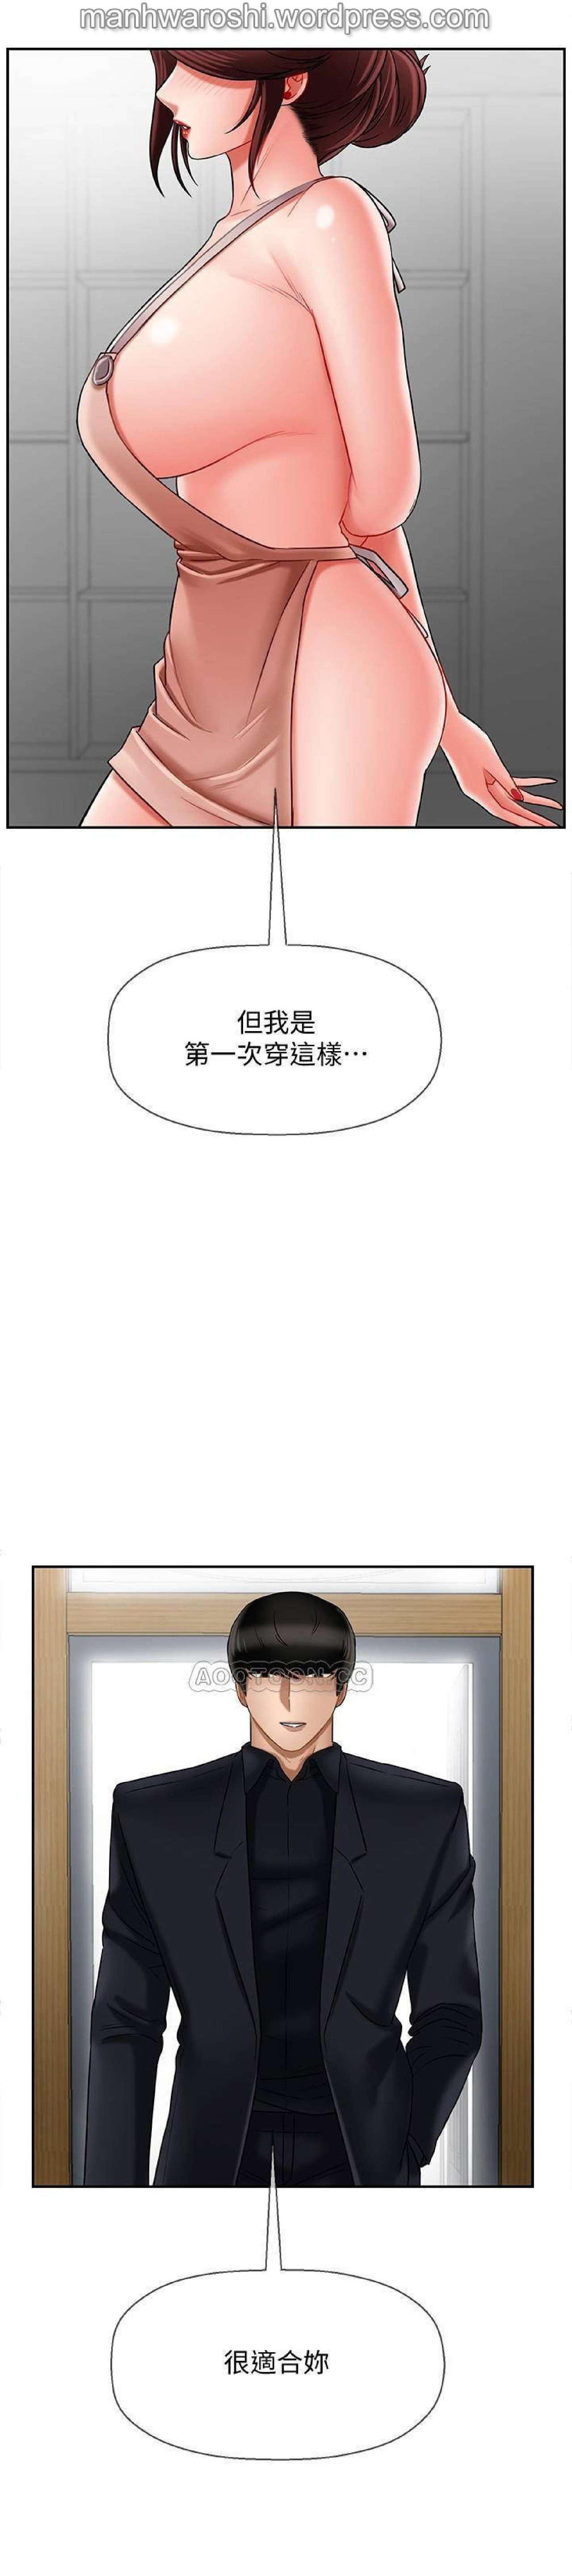 坏老师 | PHYSICAL CLASSROOM 17 [Chinese] Manhwa 5